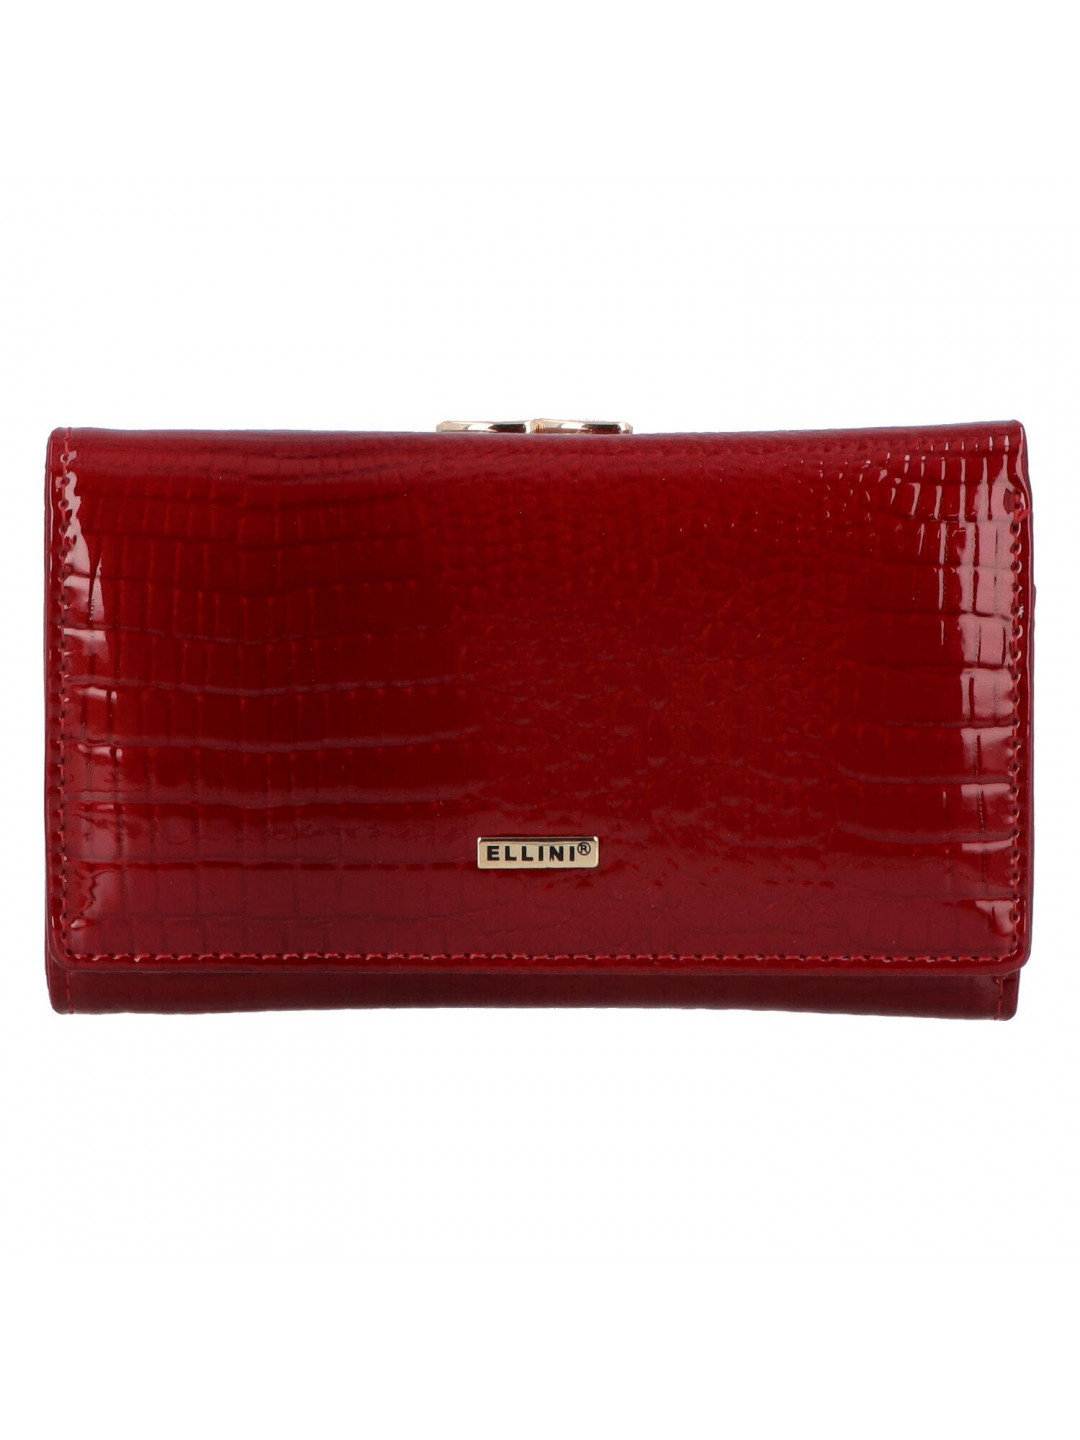 Dámská kožená peněženka červená – Ellini Liviana